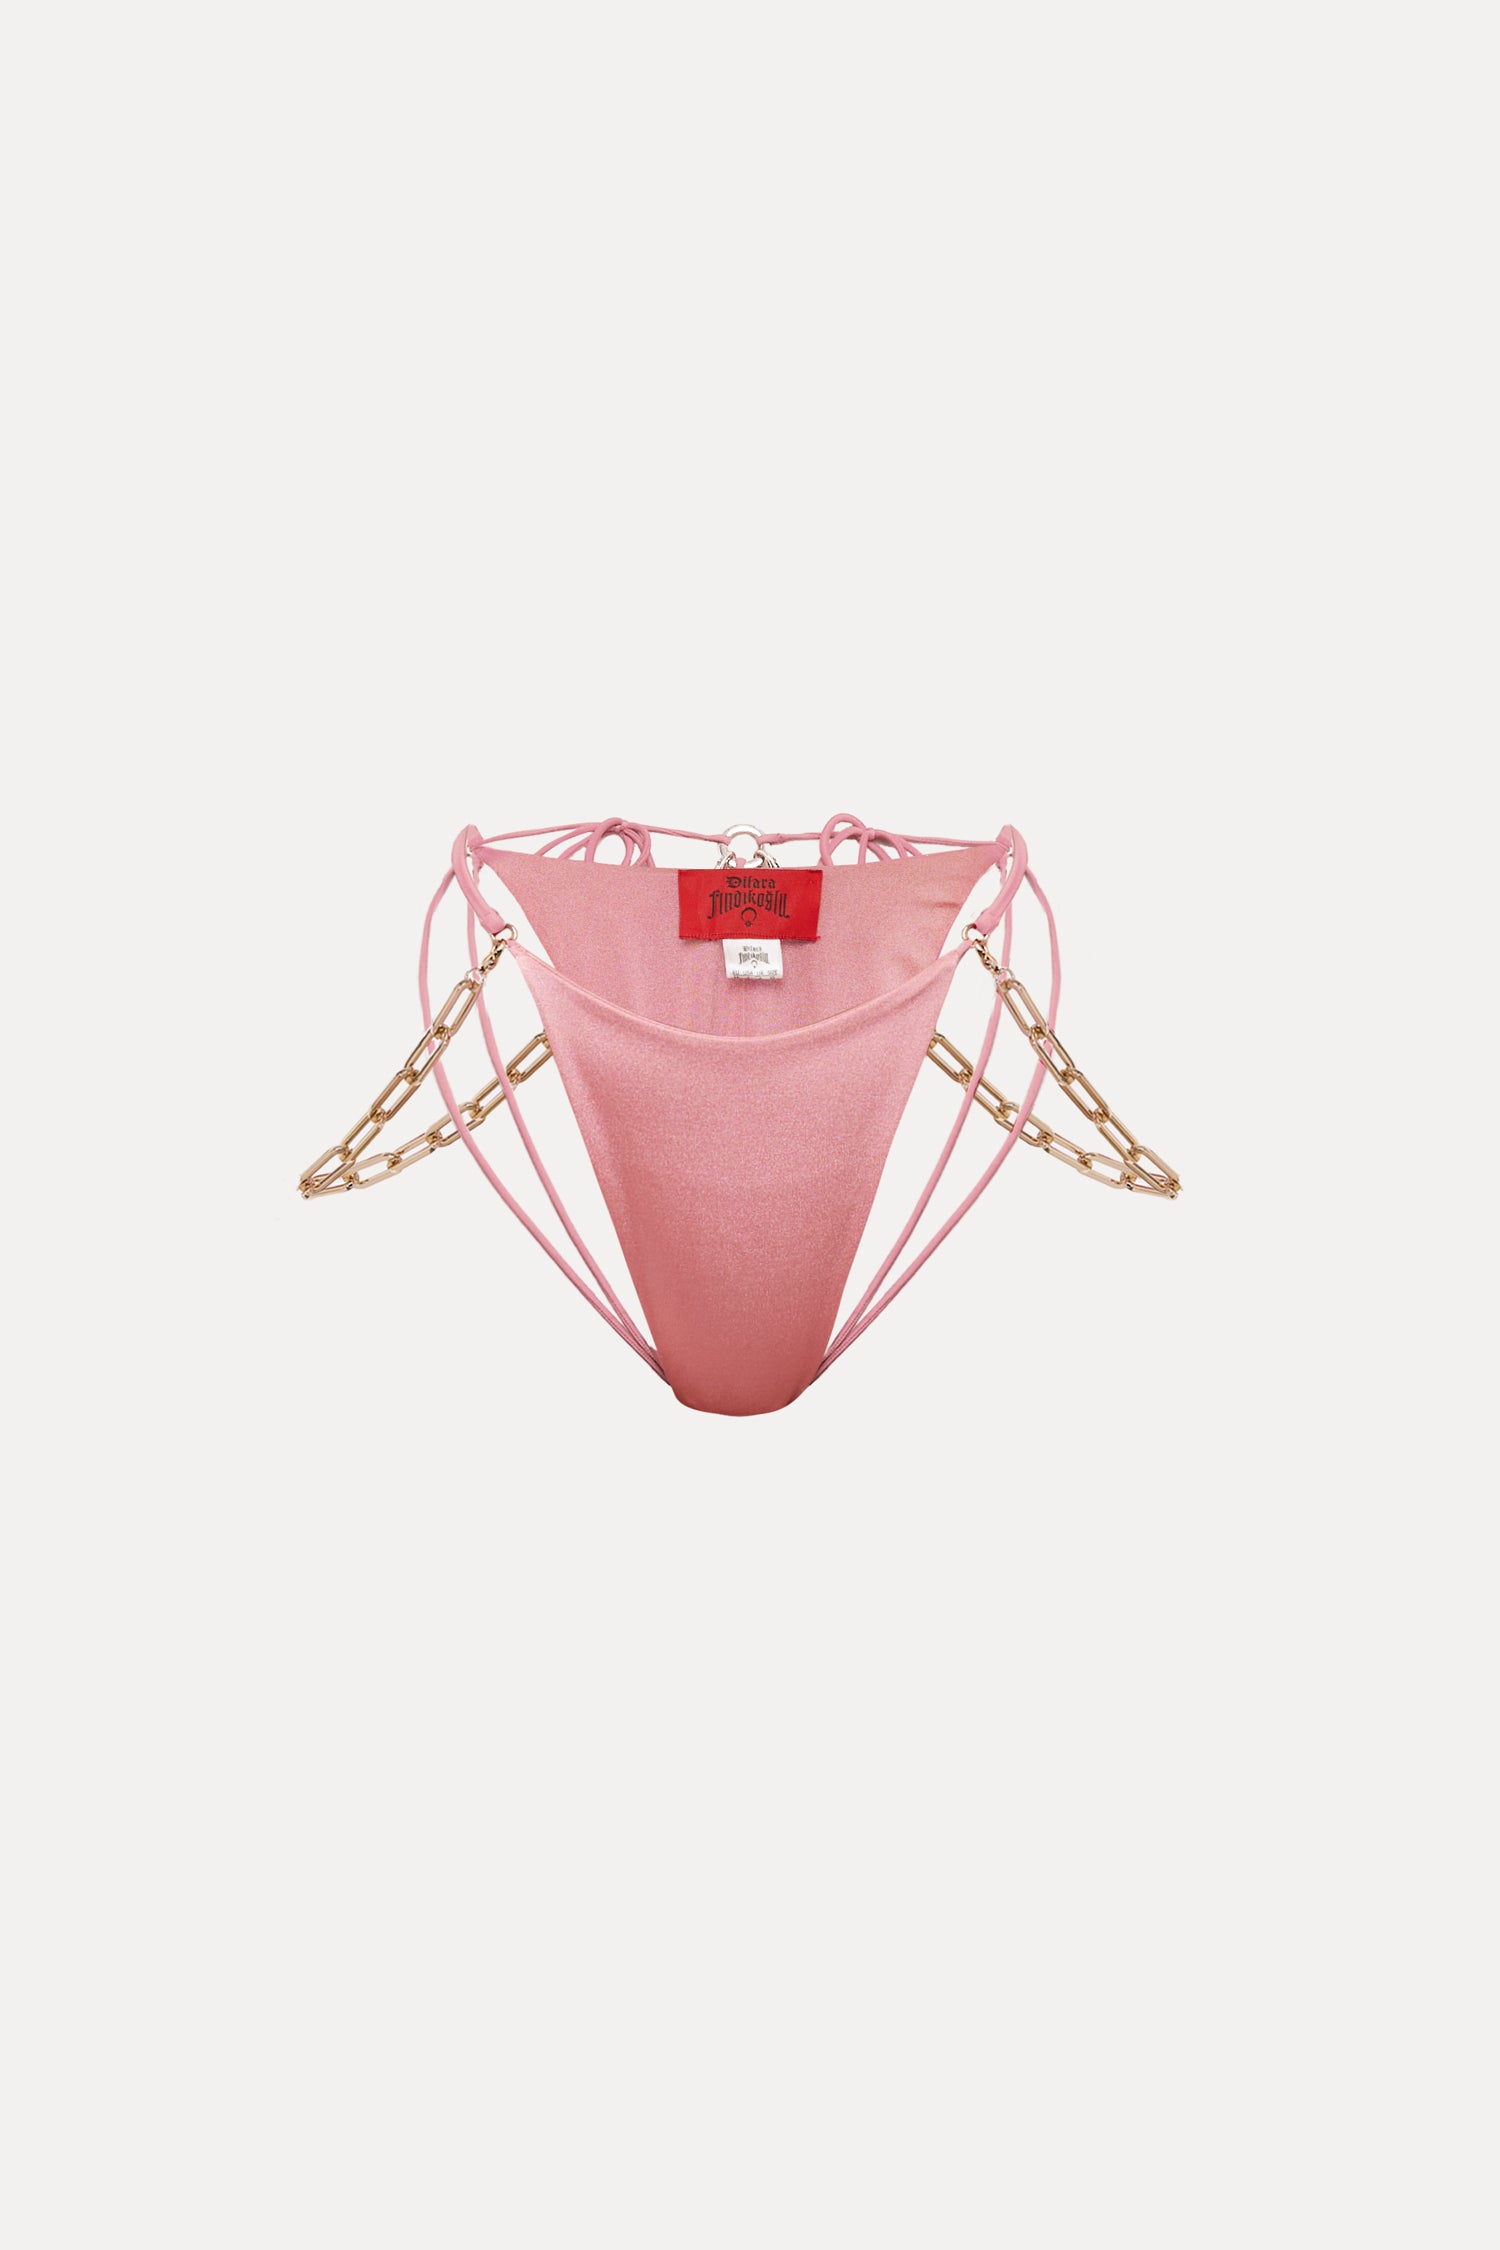 Belly Dancer Bikini Bottom Dilara Pink Findikoglu – 